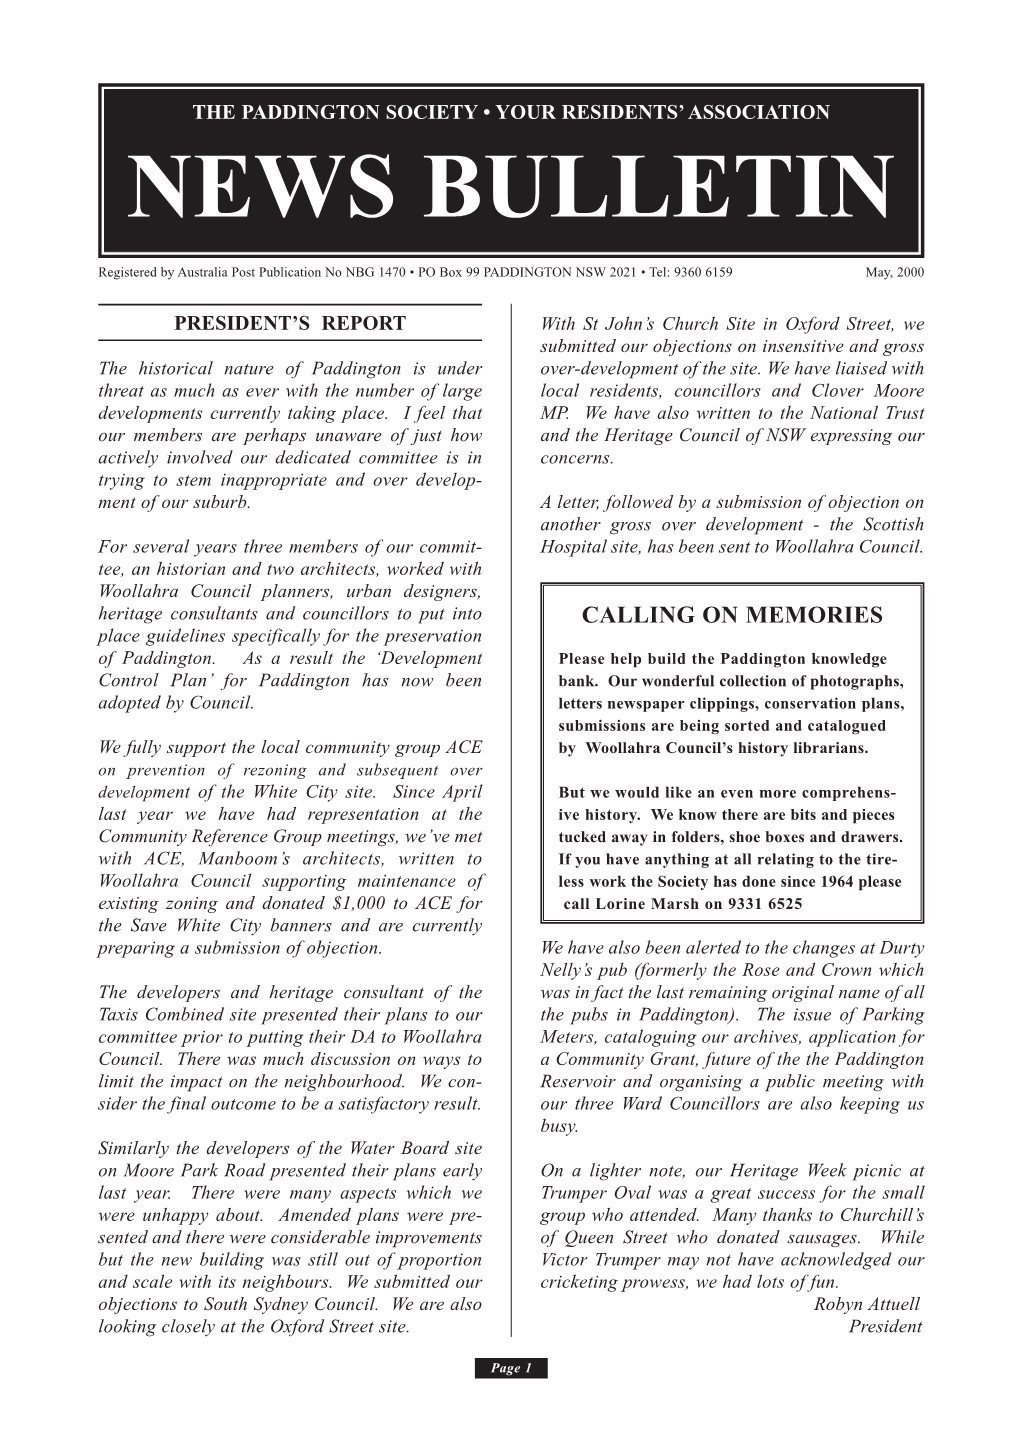 Bulletin May 2000